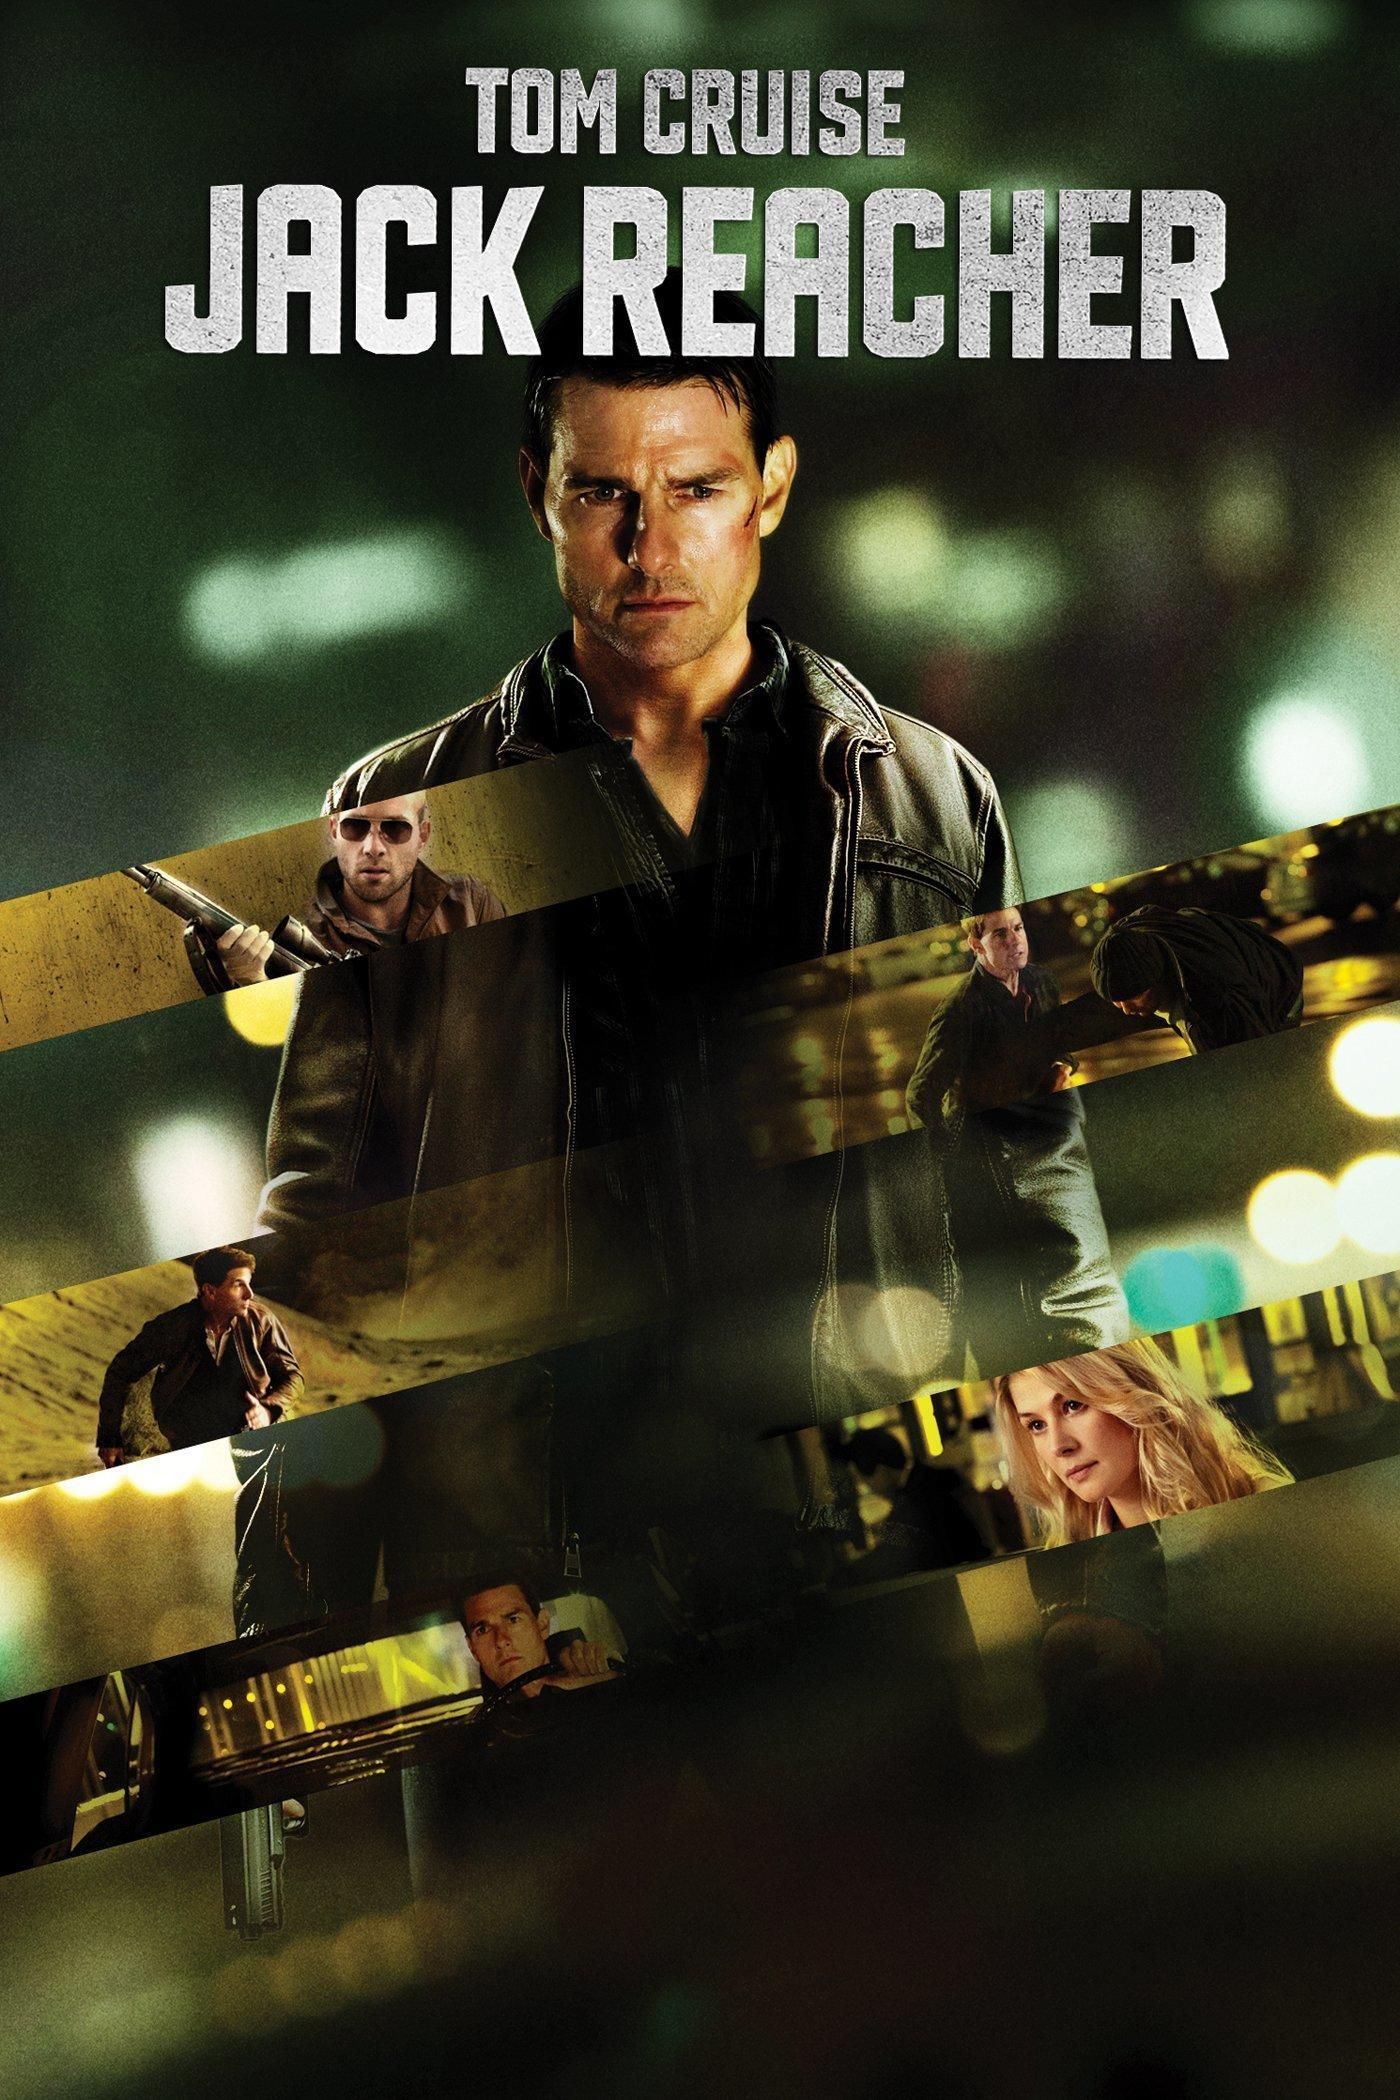 IMAX Trailer For 'Jack Reacher 2: Never Go Back' Movie Starring